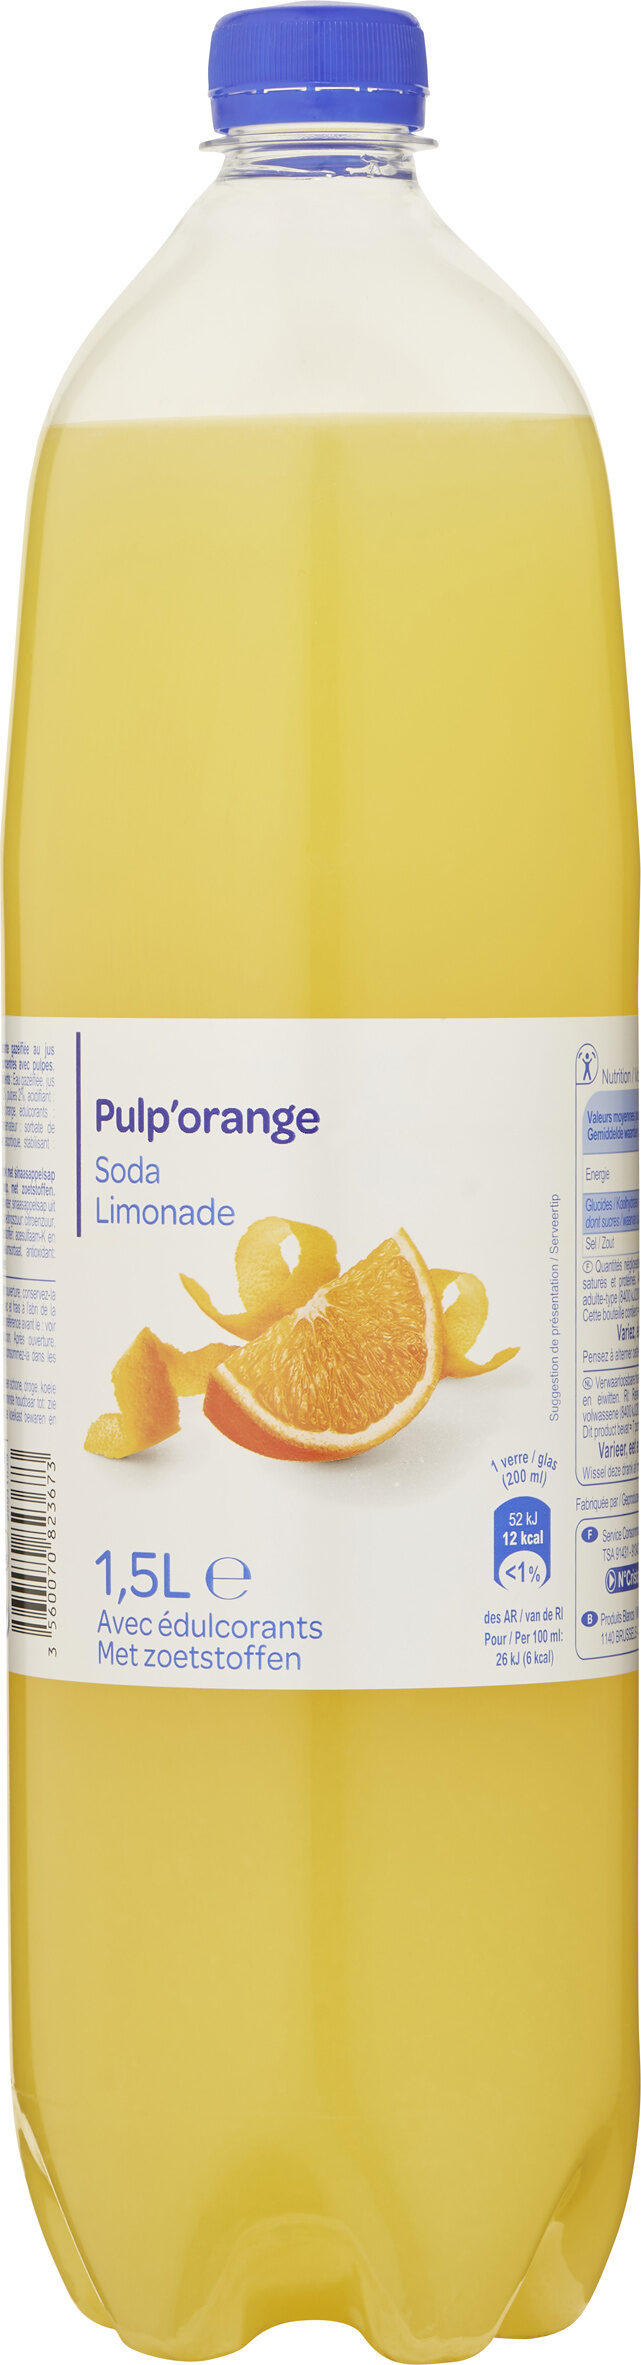 Pulp'Orange* Soda - Prodotto - fr